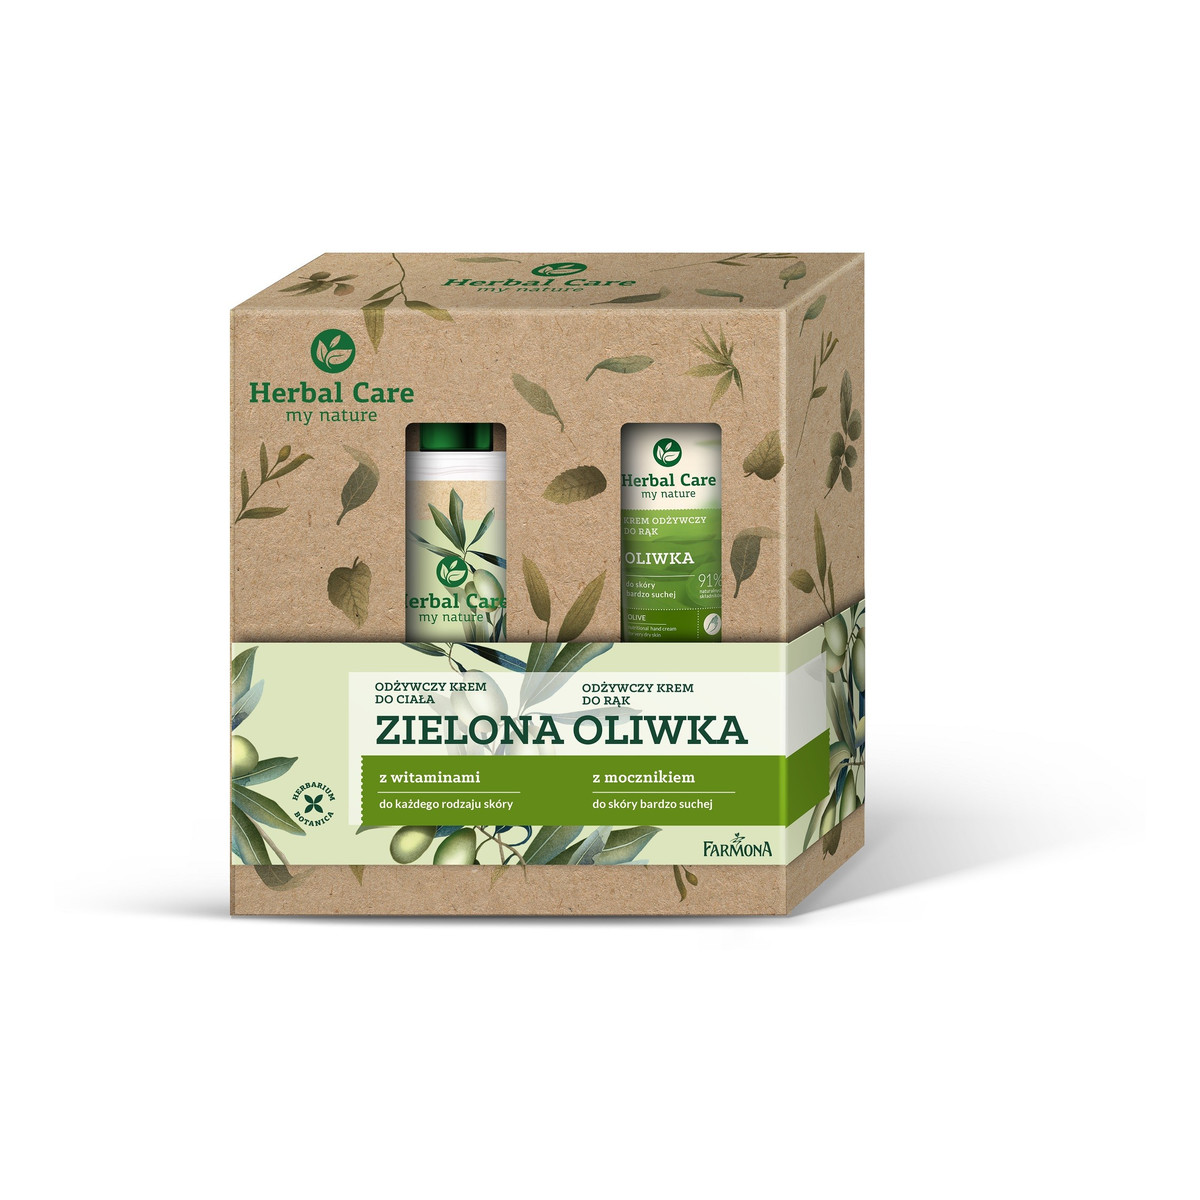 Farmona Herbal Care Zestaw prezentowy pielęgnacja ciała Zielona Oliwka: Krem odżywczy do ciała z witaminami 400ml + Krem odżywczy do rąk 100ml 500ml